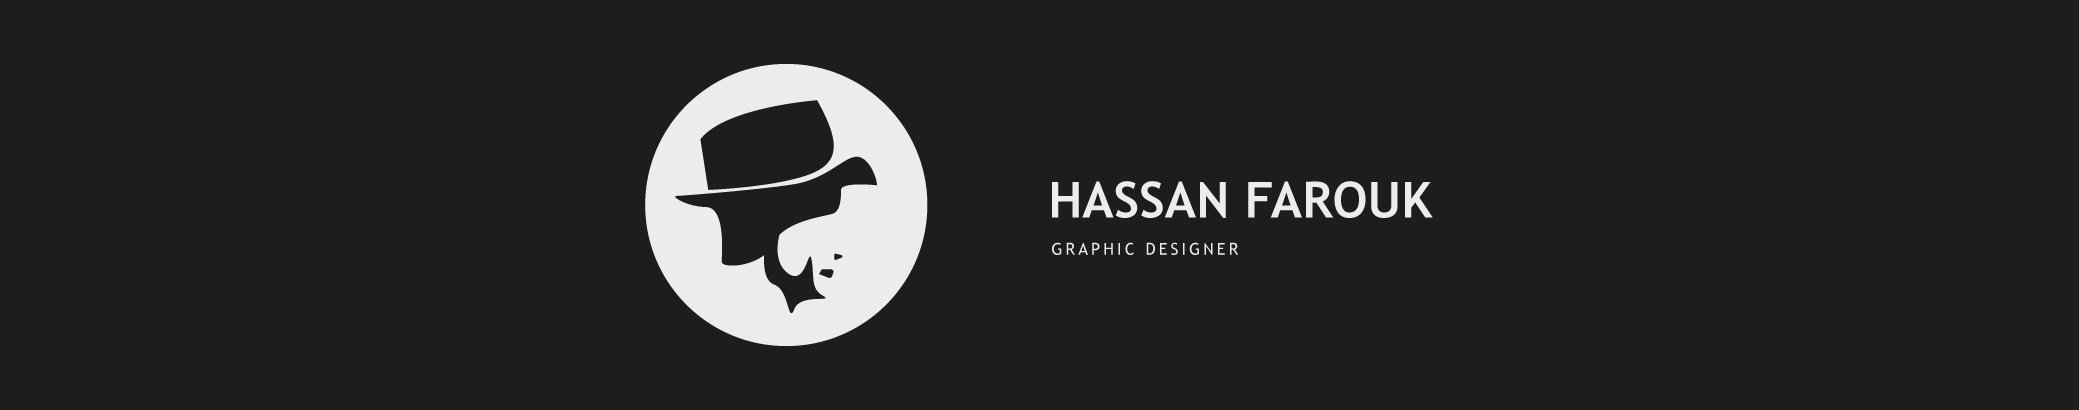 Bannière de profil de Hassan Farouk